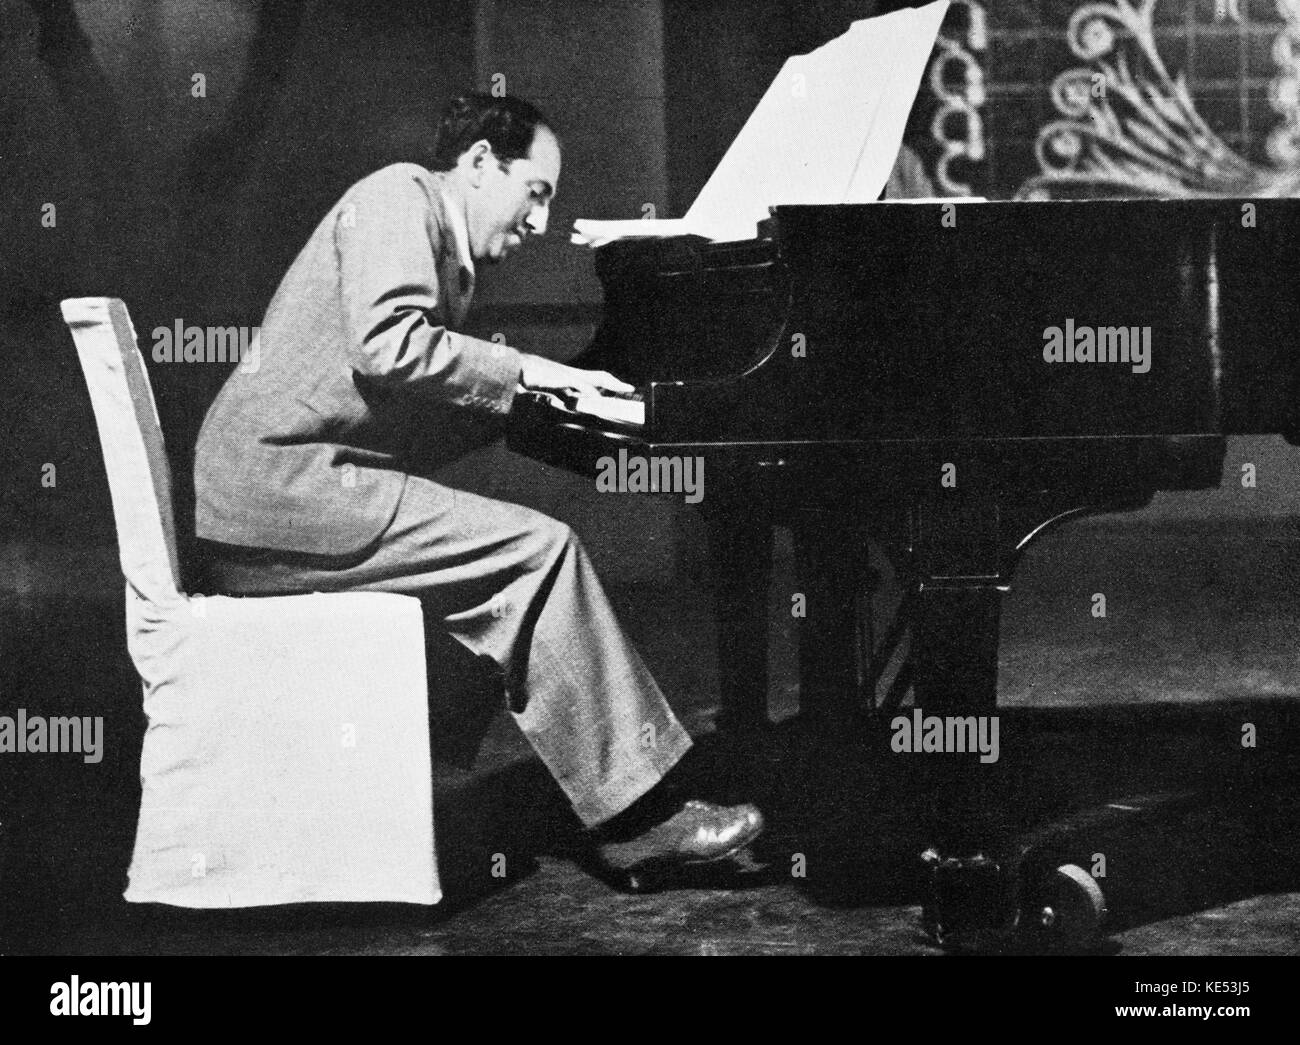 George Gershwin al piano en la RKO Studios de junio de 1937 - La última foto tomada de George Gershwin. Pianista y compositor norteamericano, el 26 de septiembre de 1898 - 11 de julio de 1937 Foto de stock